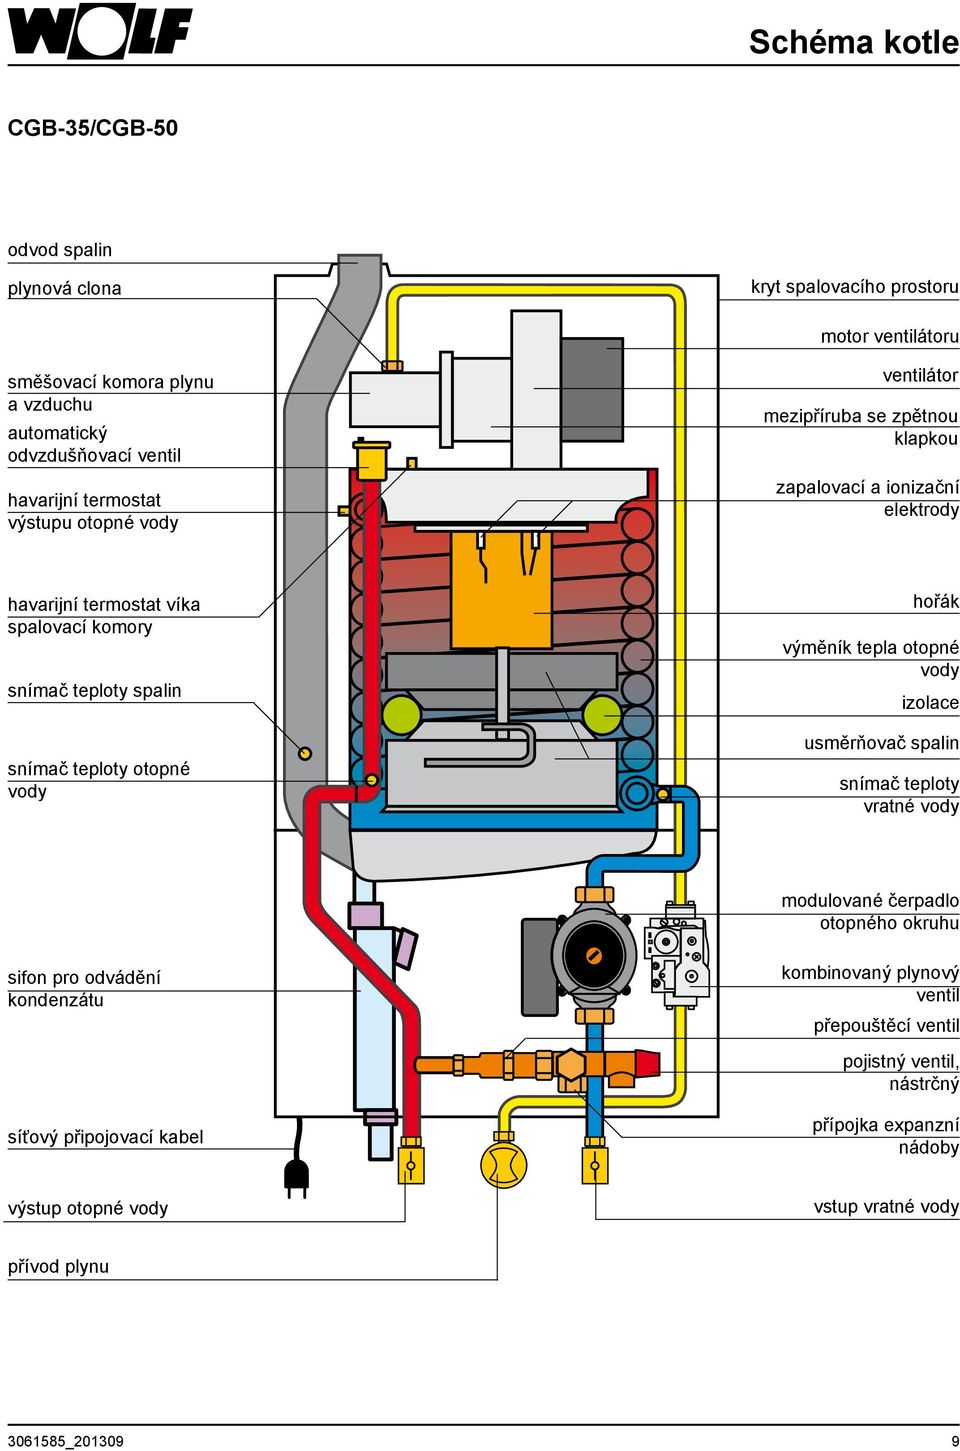 teploty otopné vody hořák výměník tepla otopné vody izolace usměrňovač spalin snímač teploty vratné vody modulované čerpadlo otopného okruhu sifon pro odvádění kondenzátu